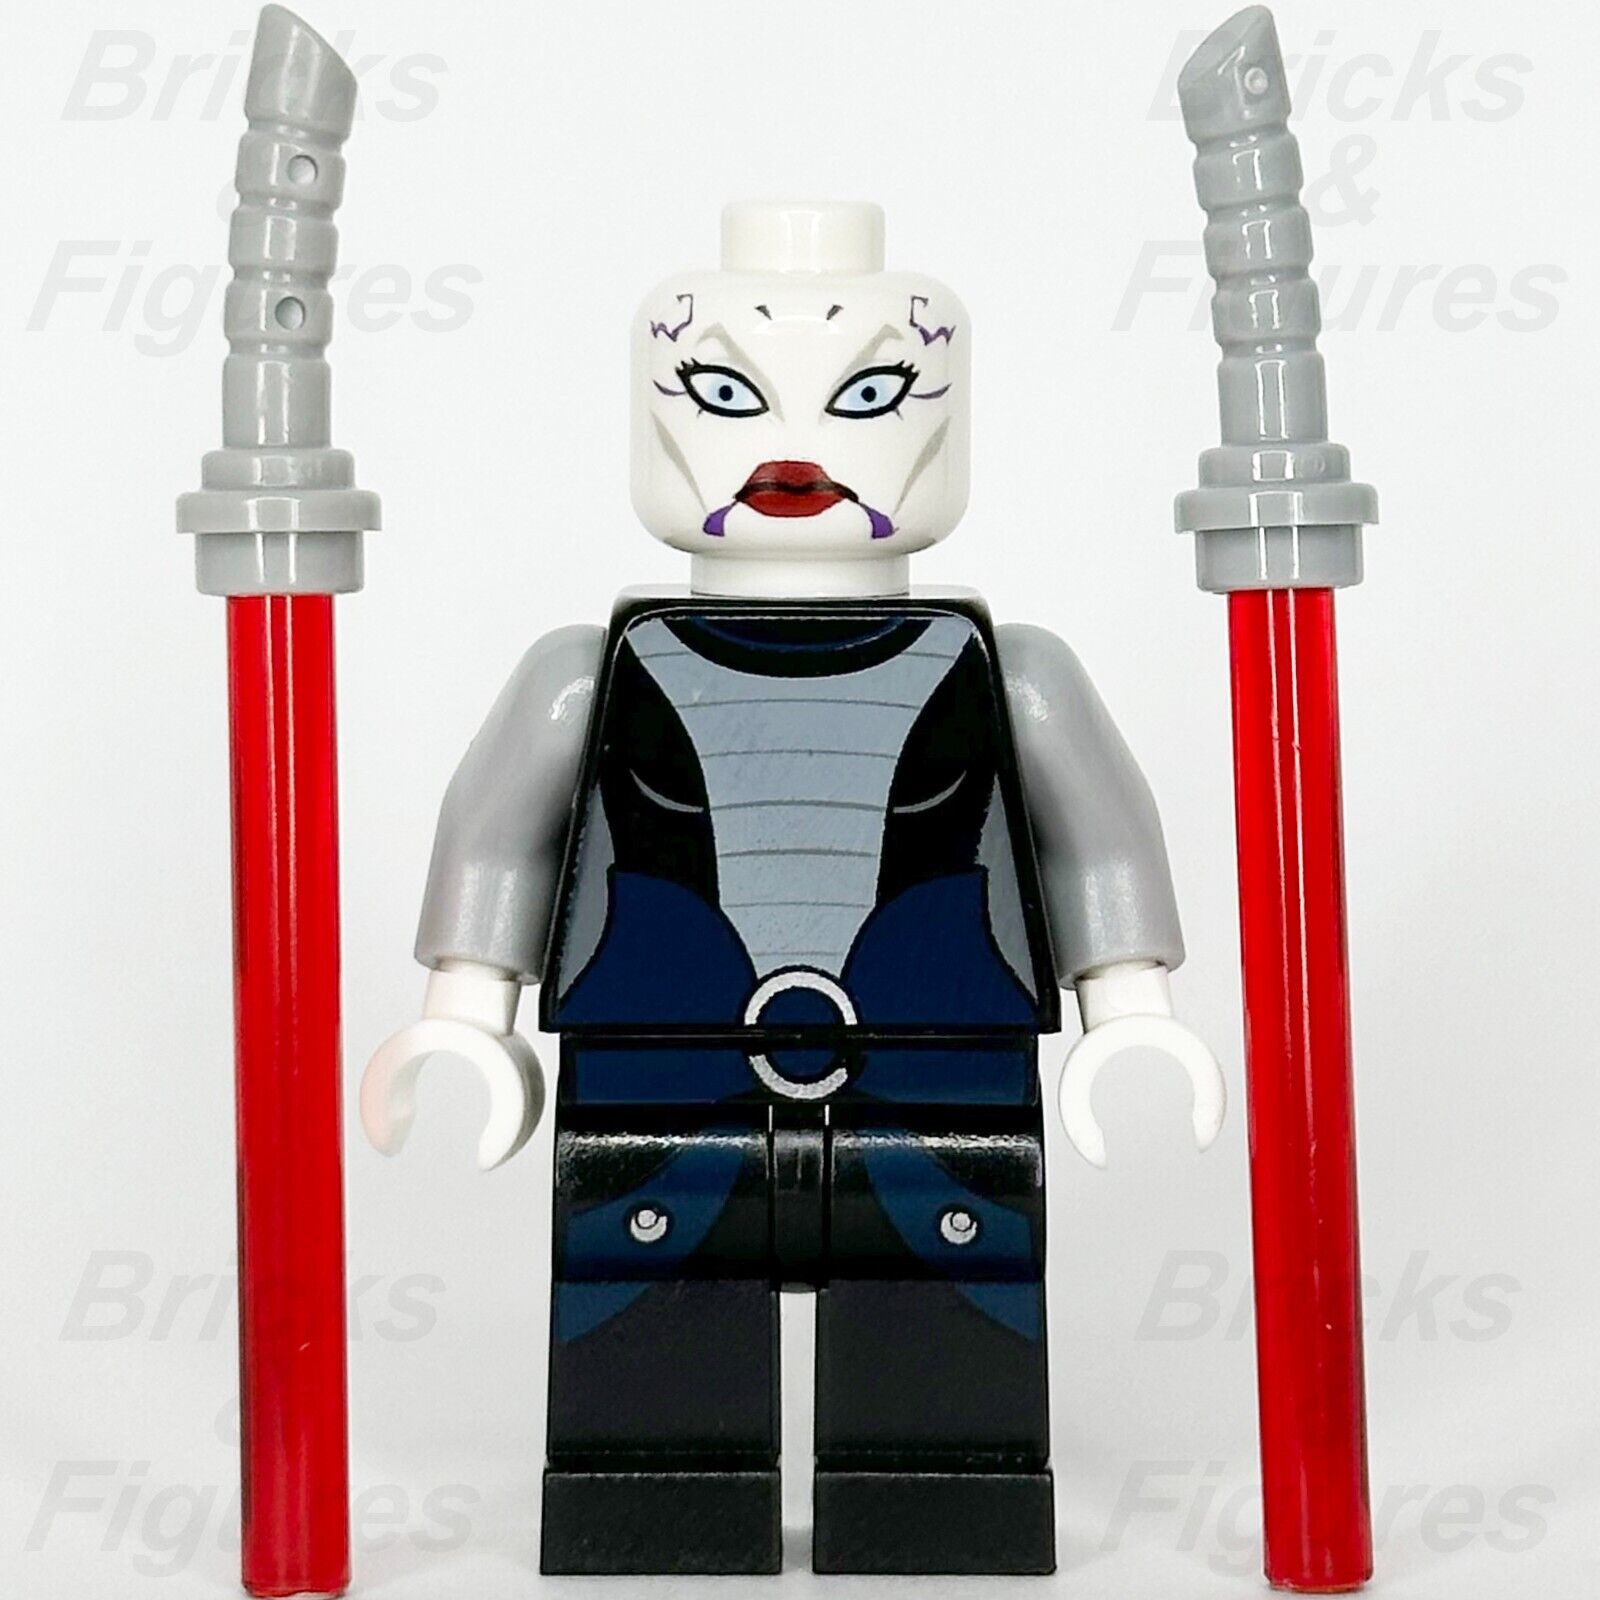 LEGO Star Wars Asajj Ventress Minifigure Clone Wars Sith Apprentice 7957 sw0318